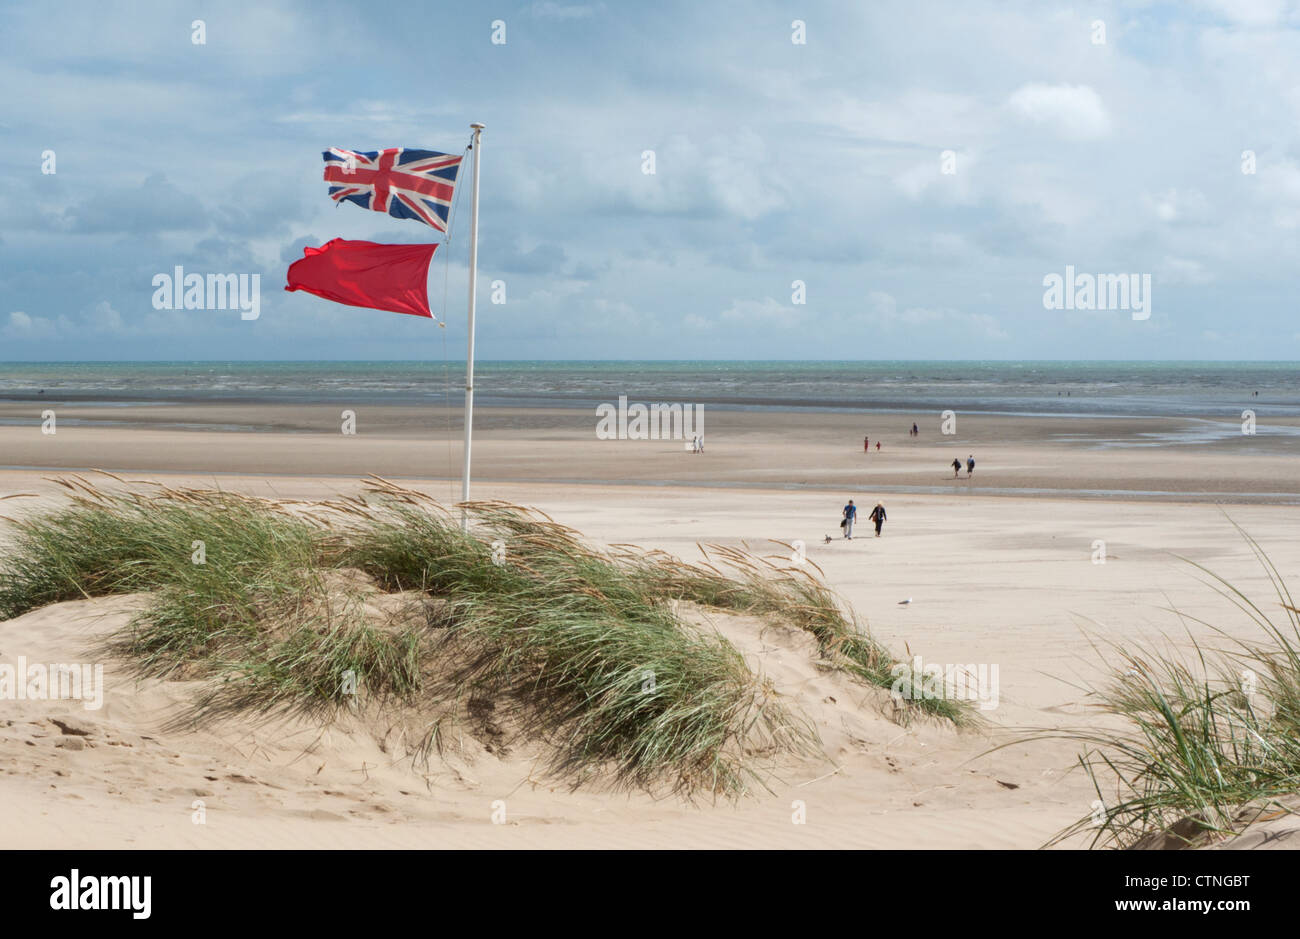 Union jack flag et red flag flying des dunes sur la plage par un jour de vent à marée basse Banque D'Images